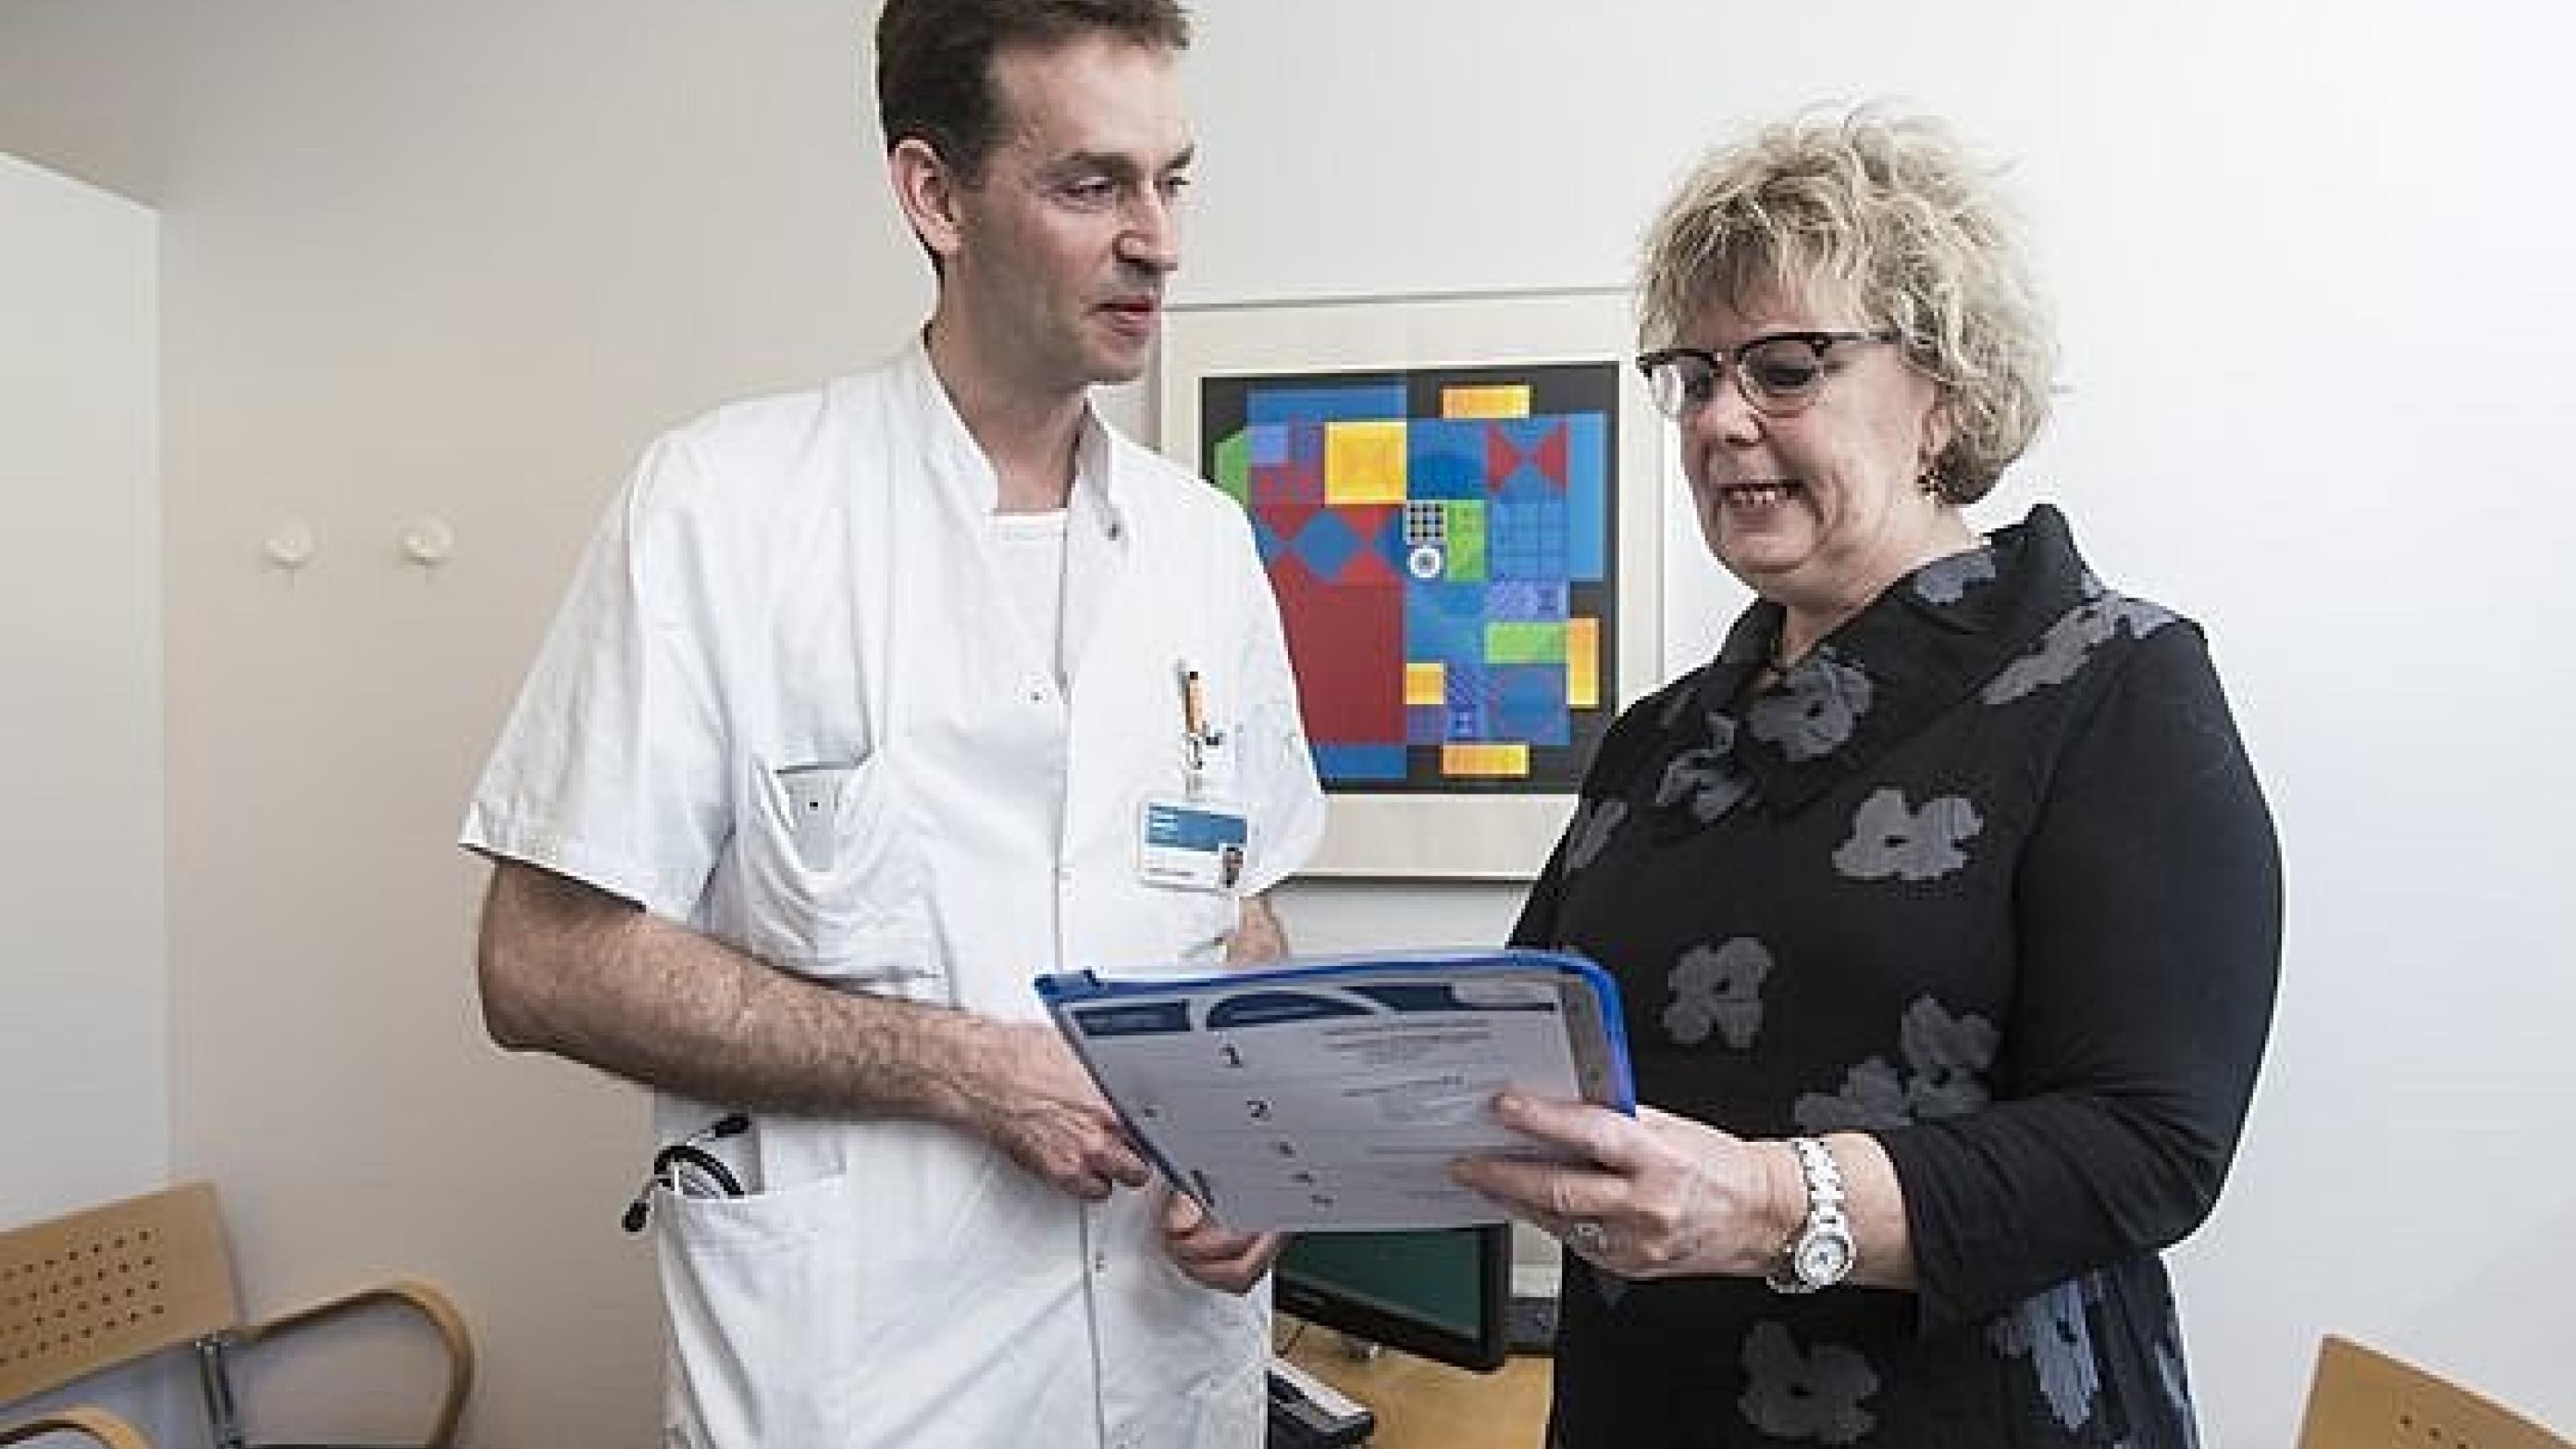 Onkolog Lars Henrik Jensen og Mona Petersen, som er kronisk kræftpatient og medlem af Patient-Pårørende Rådet. Foto: Palle Peter Skov